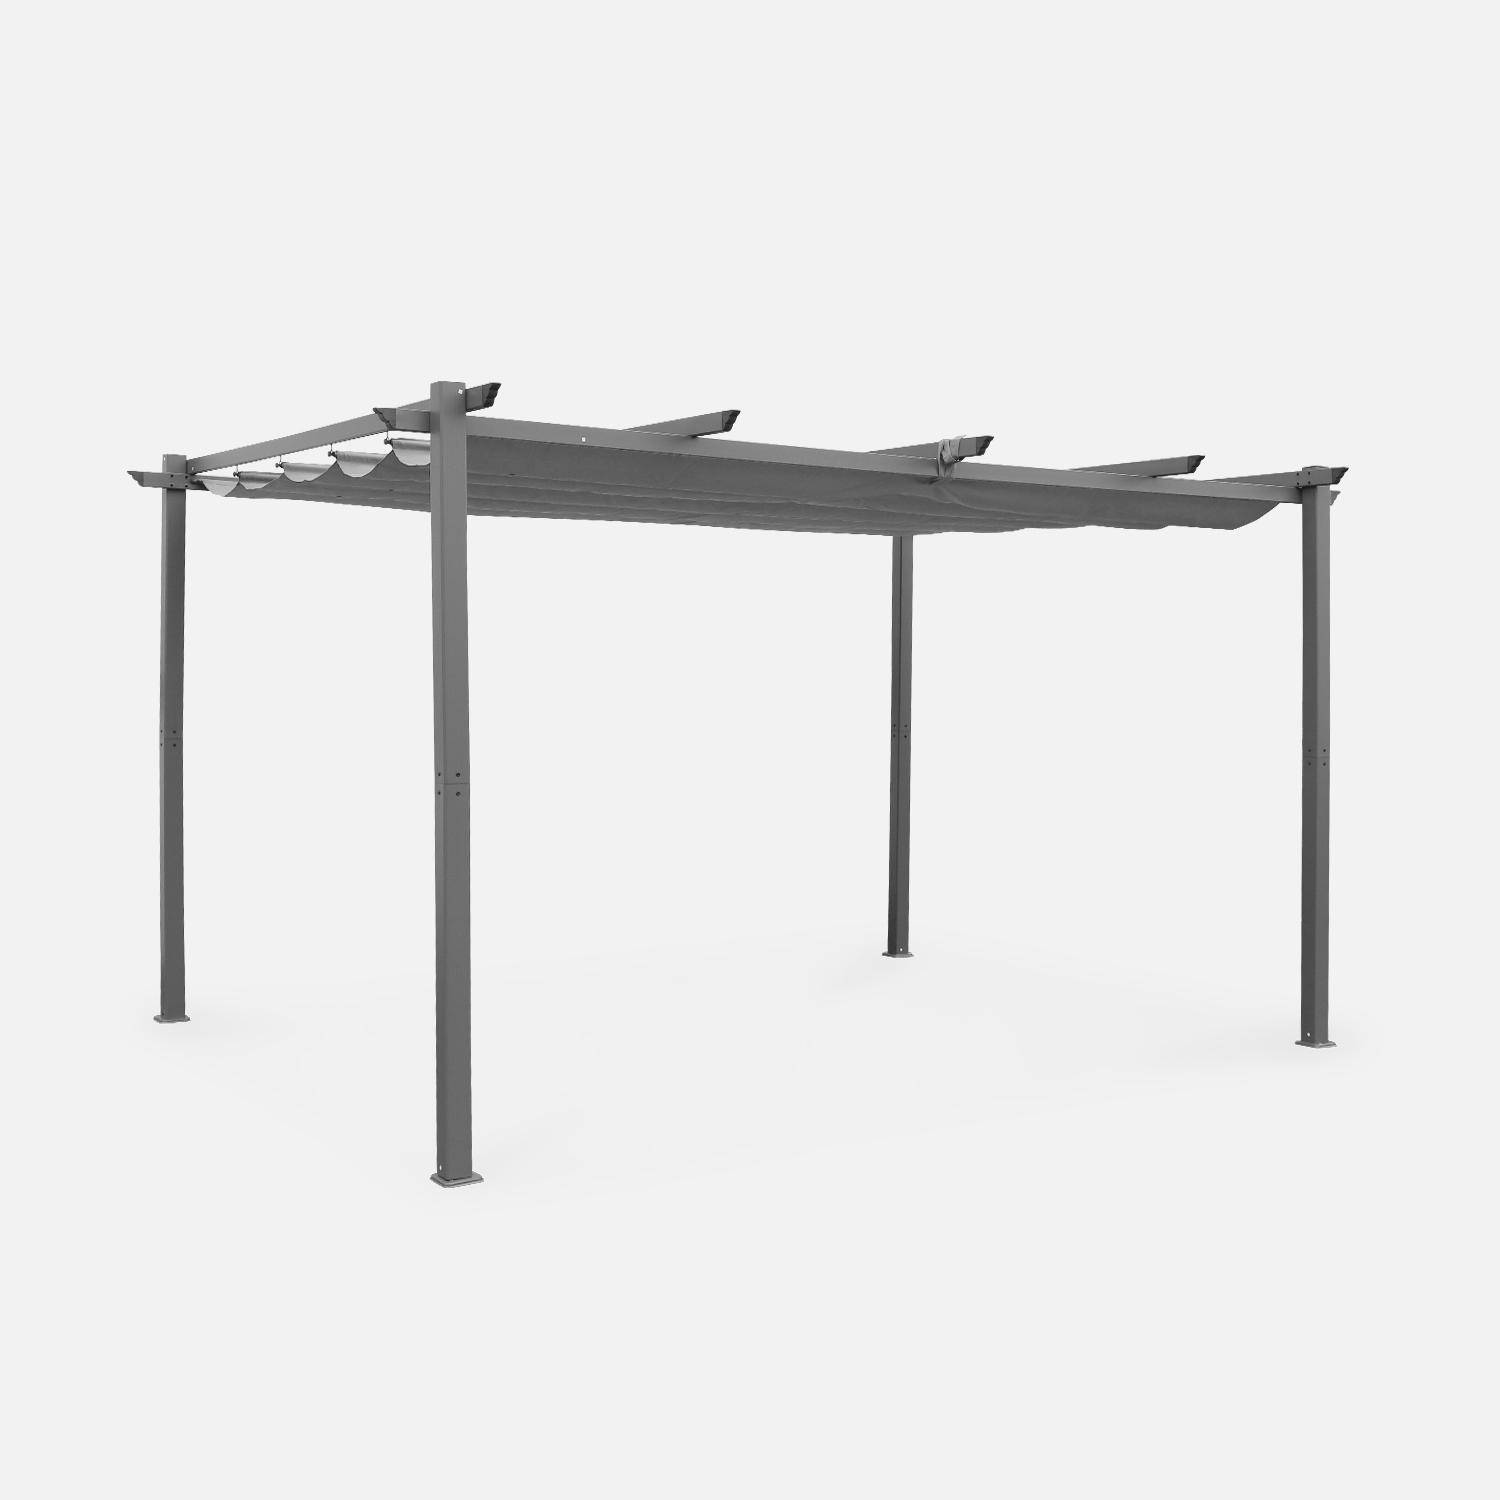 Pergola aluminium - Isla 3x4m -  Toile grise - Tonnelle idéale pour votre terrasse, toit rétractable, toile coulissante, structure aluminium Photo1